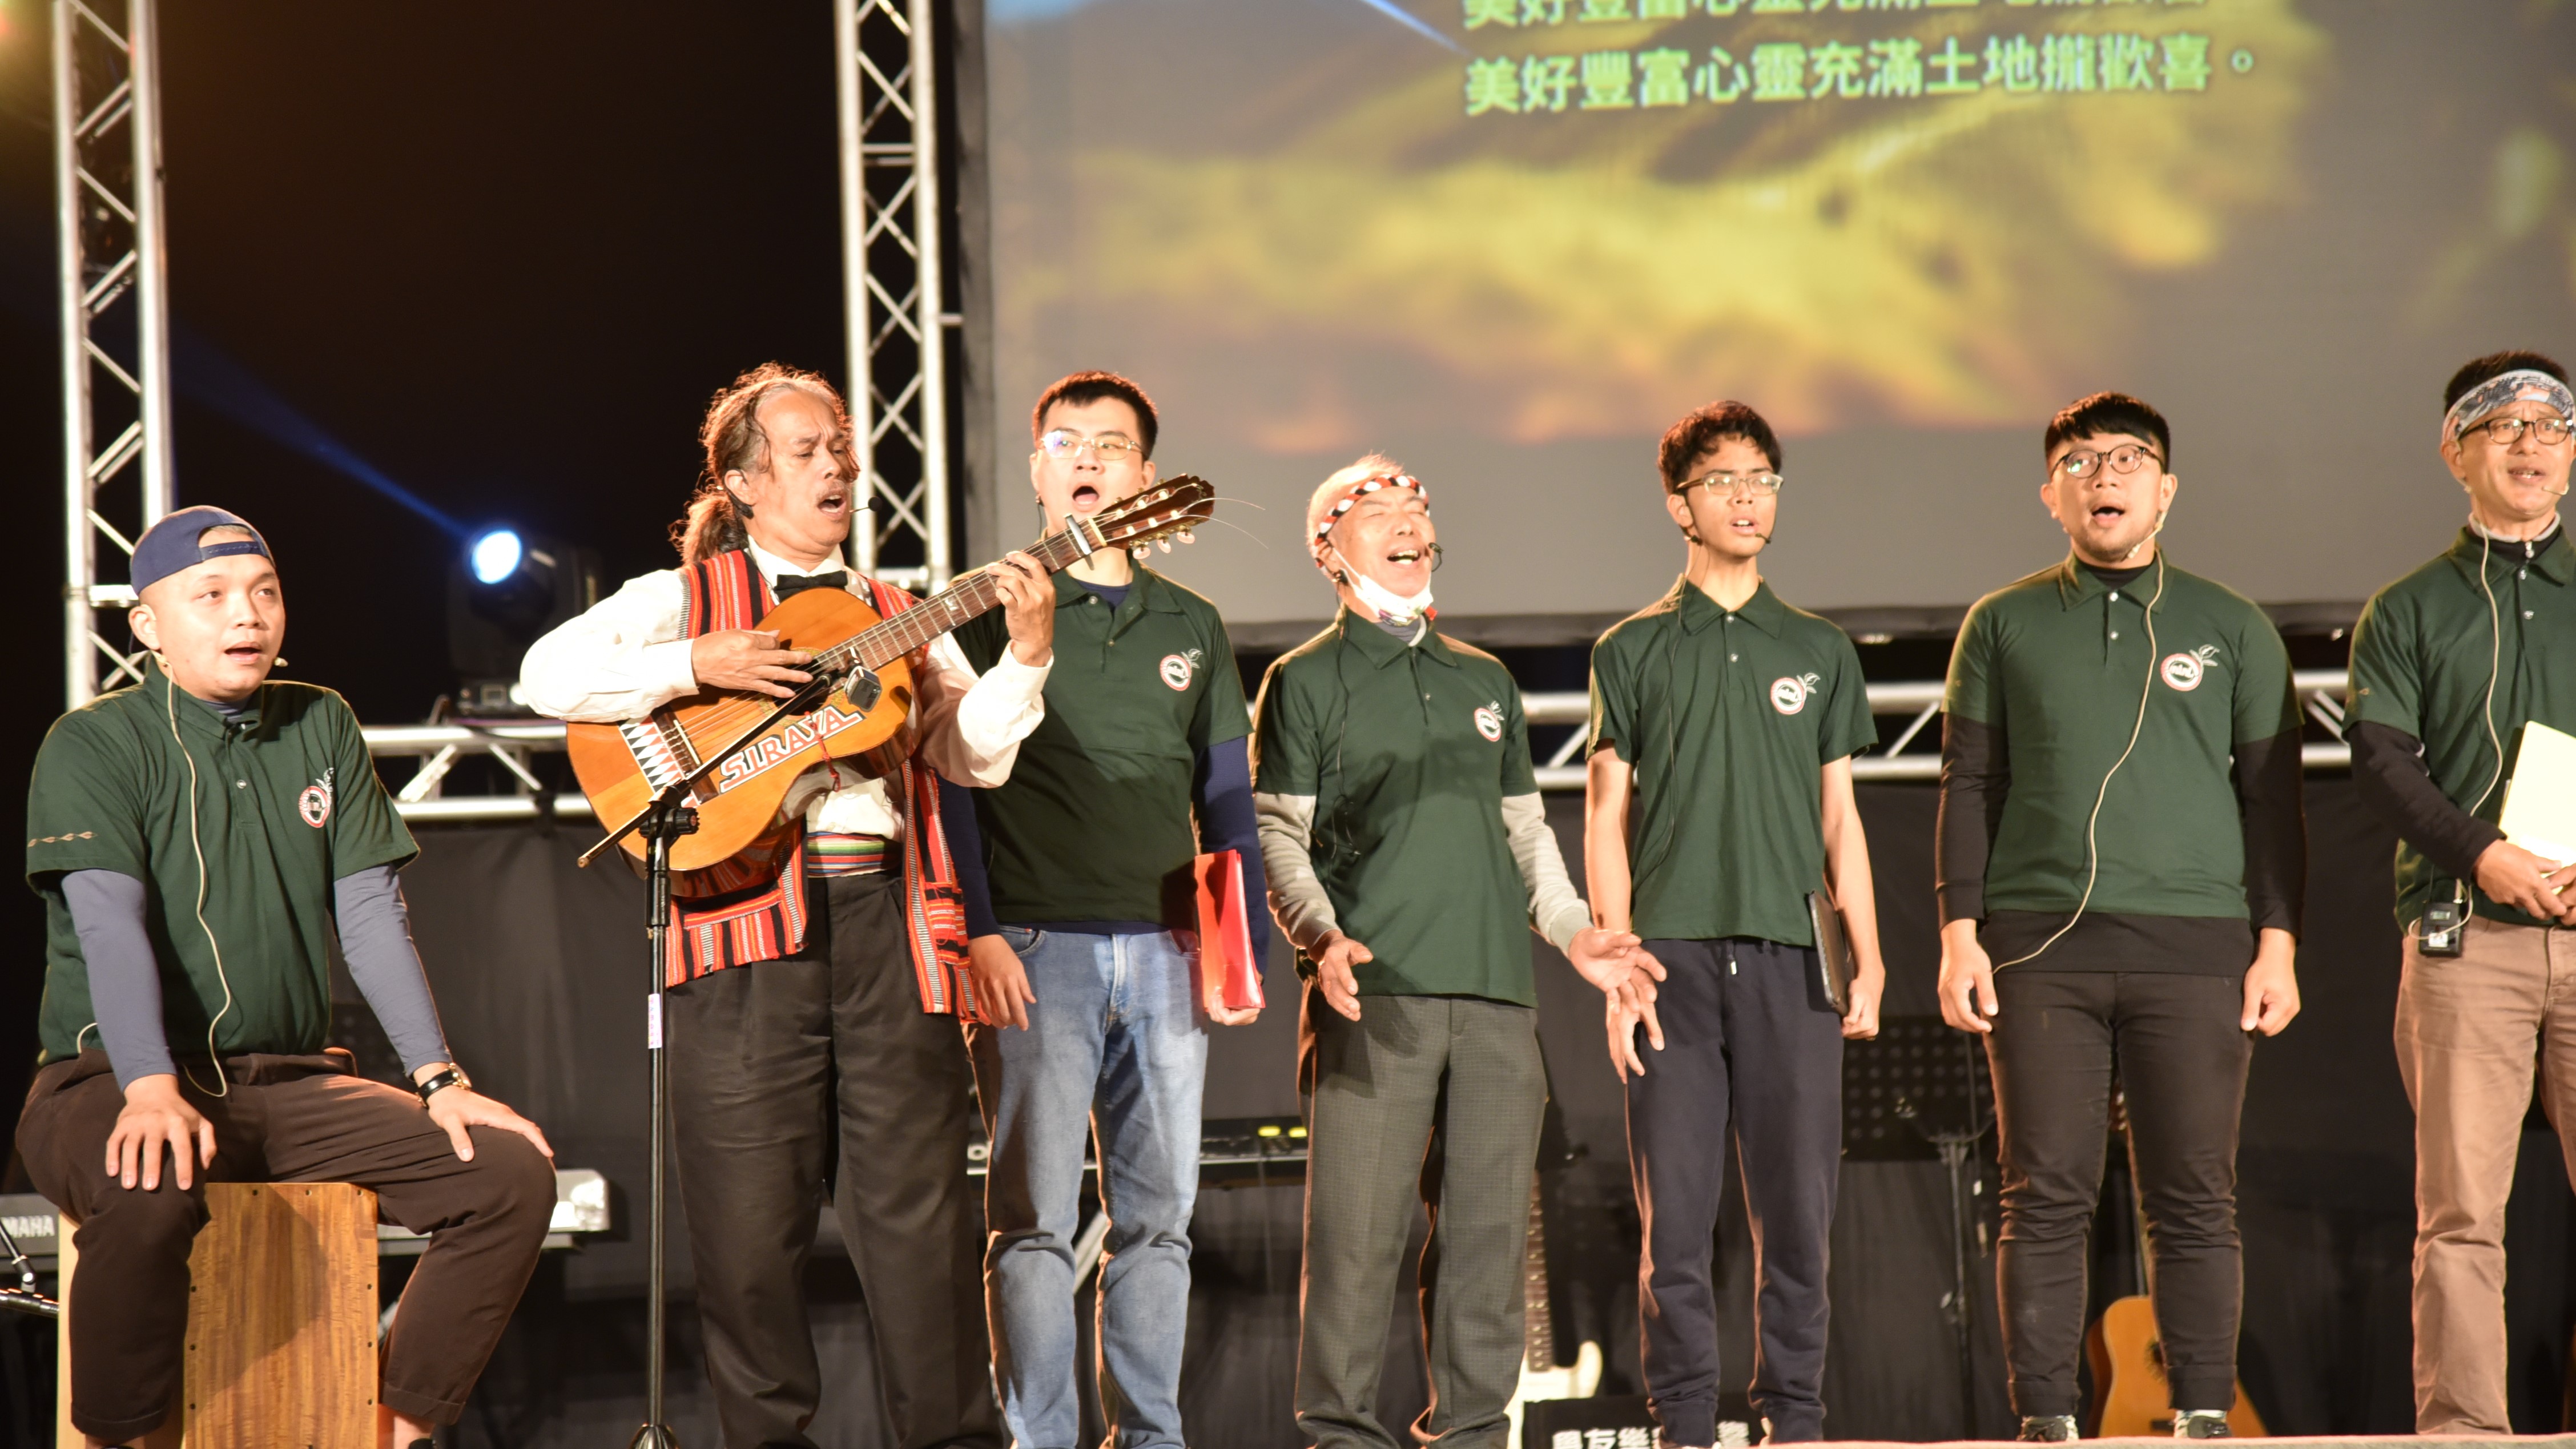 台南聖誕晚會邀請台南市西拉雅文化協會 Onini竹音樂團表演。(謝宜汝攝影)